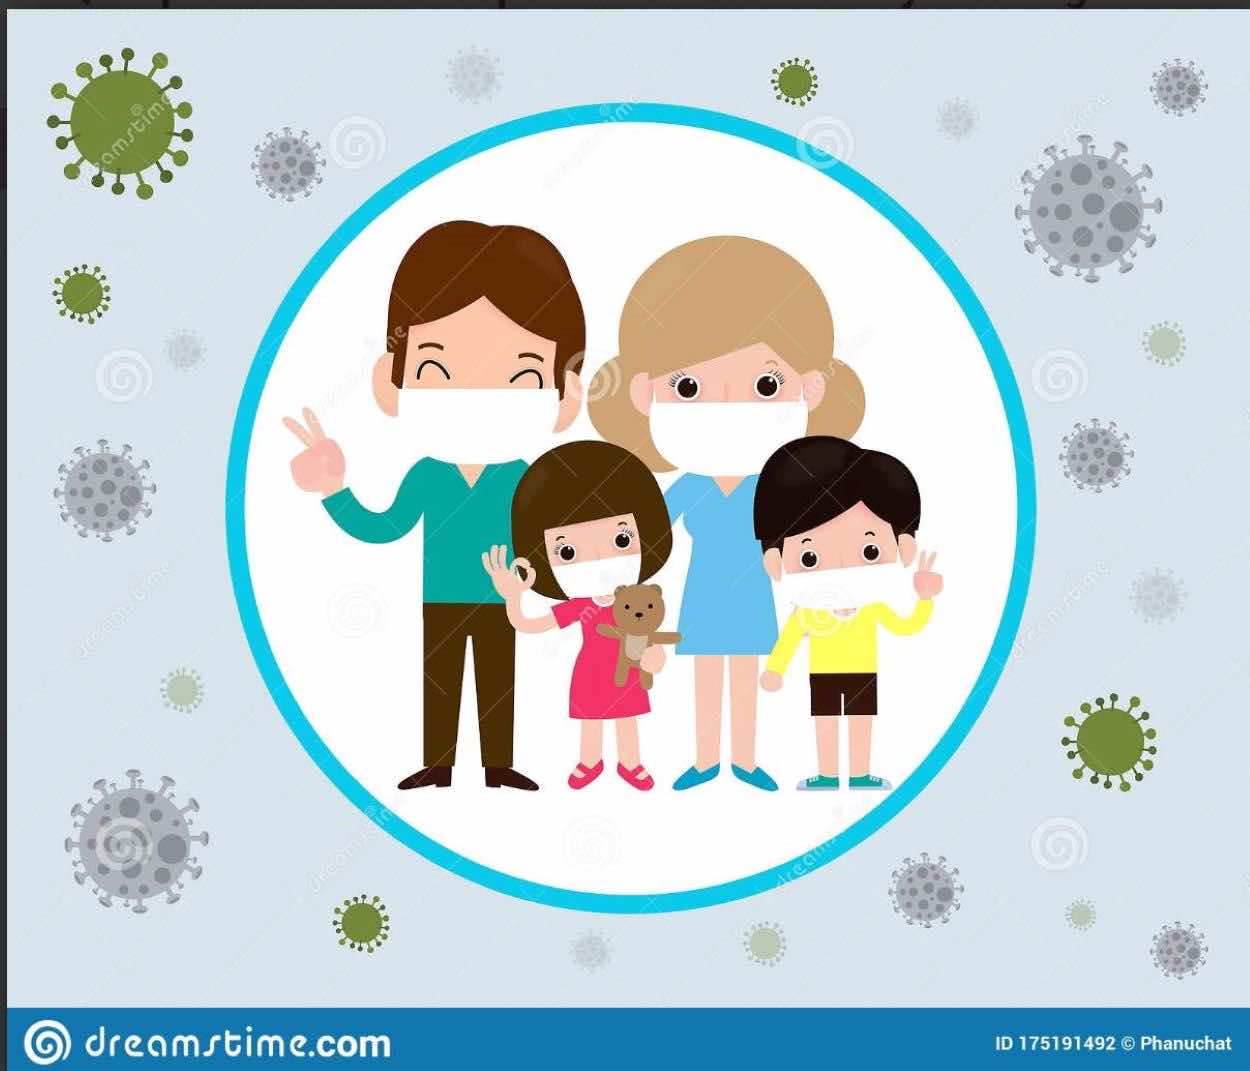 نصيحة عن فيروس كورونا (4) | التوصيات الكاملة لمنع انتشار العدوى في المنزل وحماية الآخرين